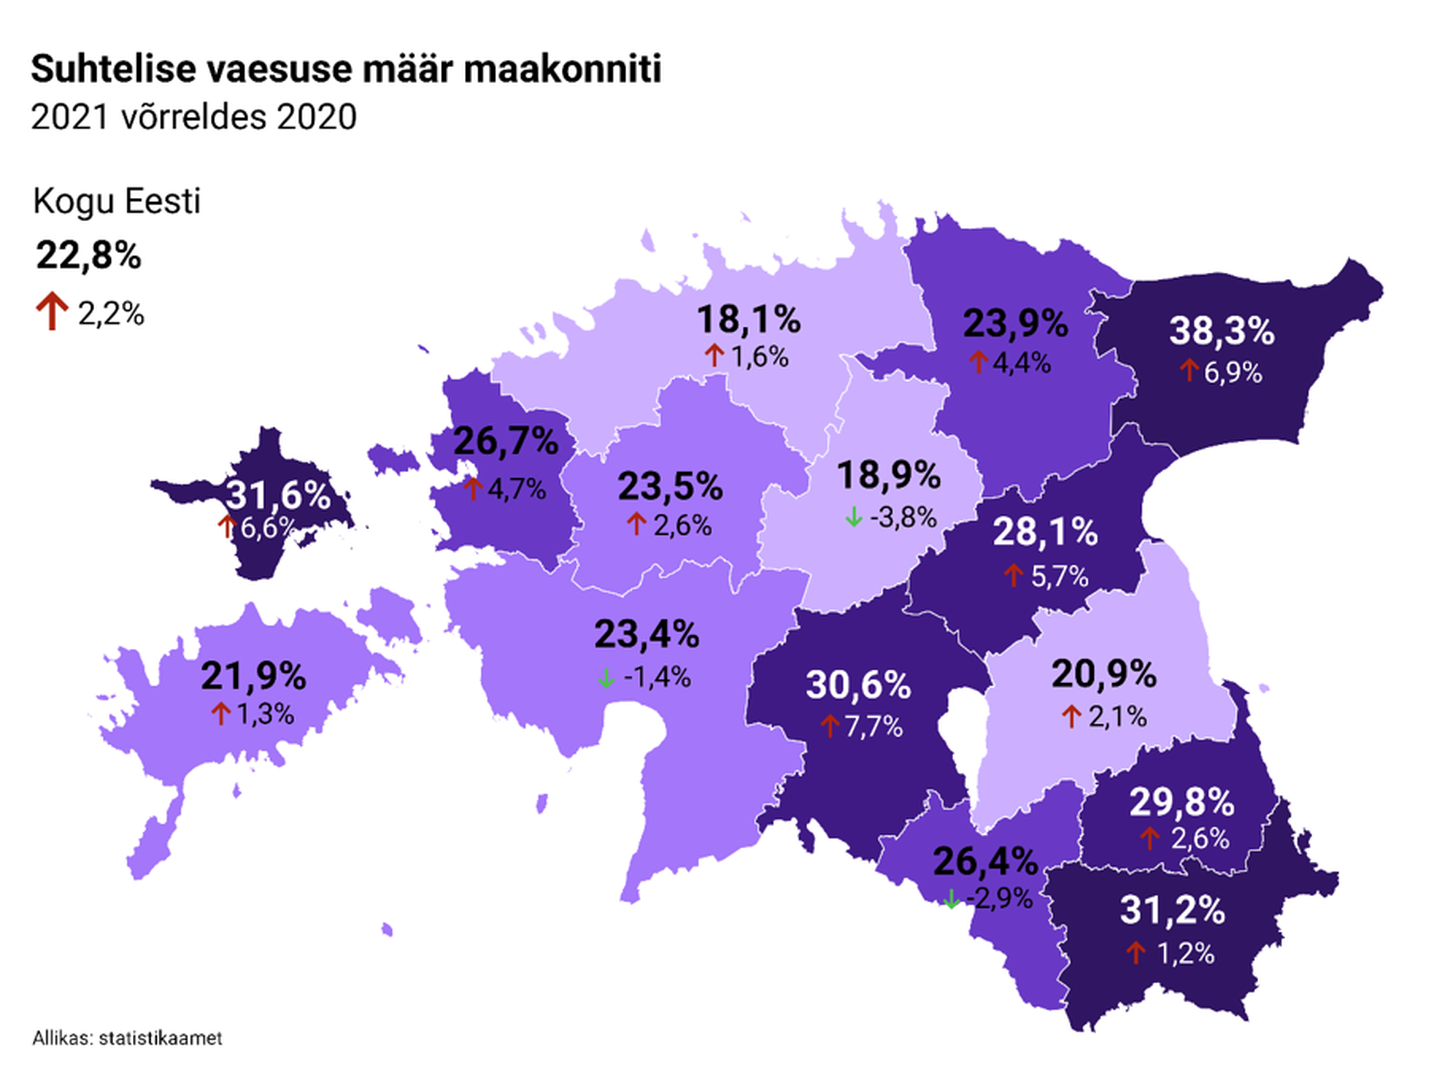 Suhtelise vaesuse määr Eestis 2021. aastal. Järvamaal oli suhtelise vaesuse osa 18,9 protsenti, mis kuulub Eesti väikseimate hulka.